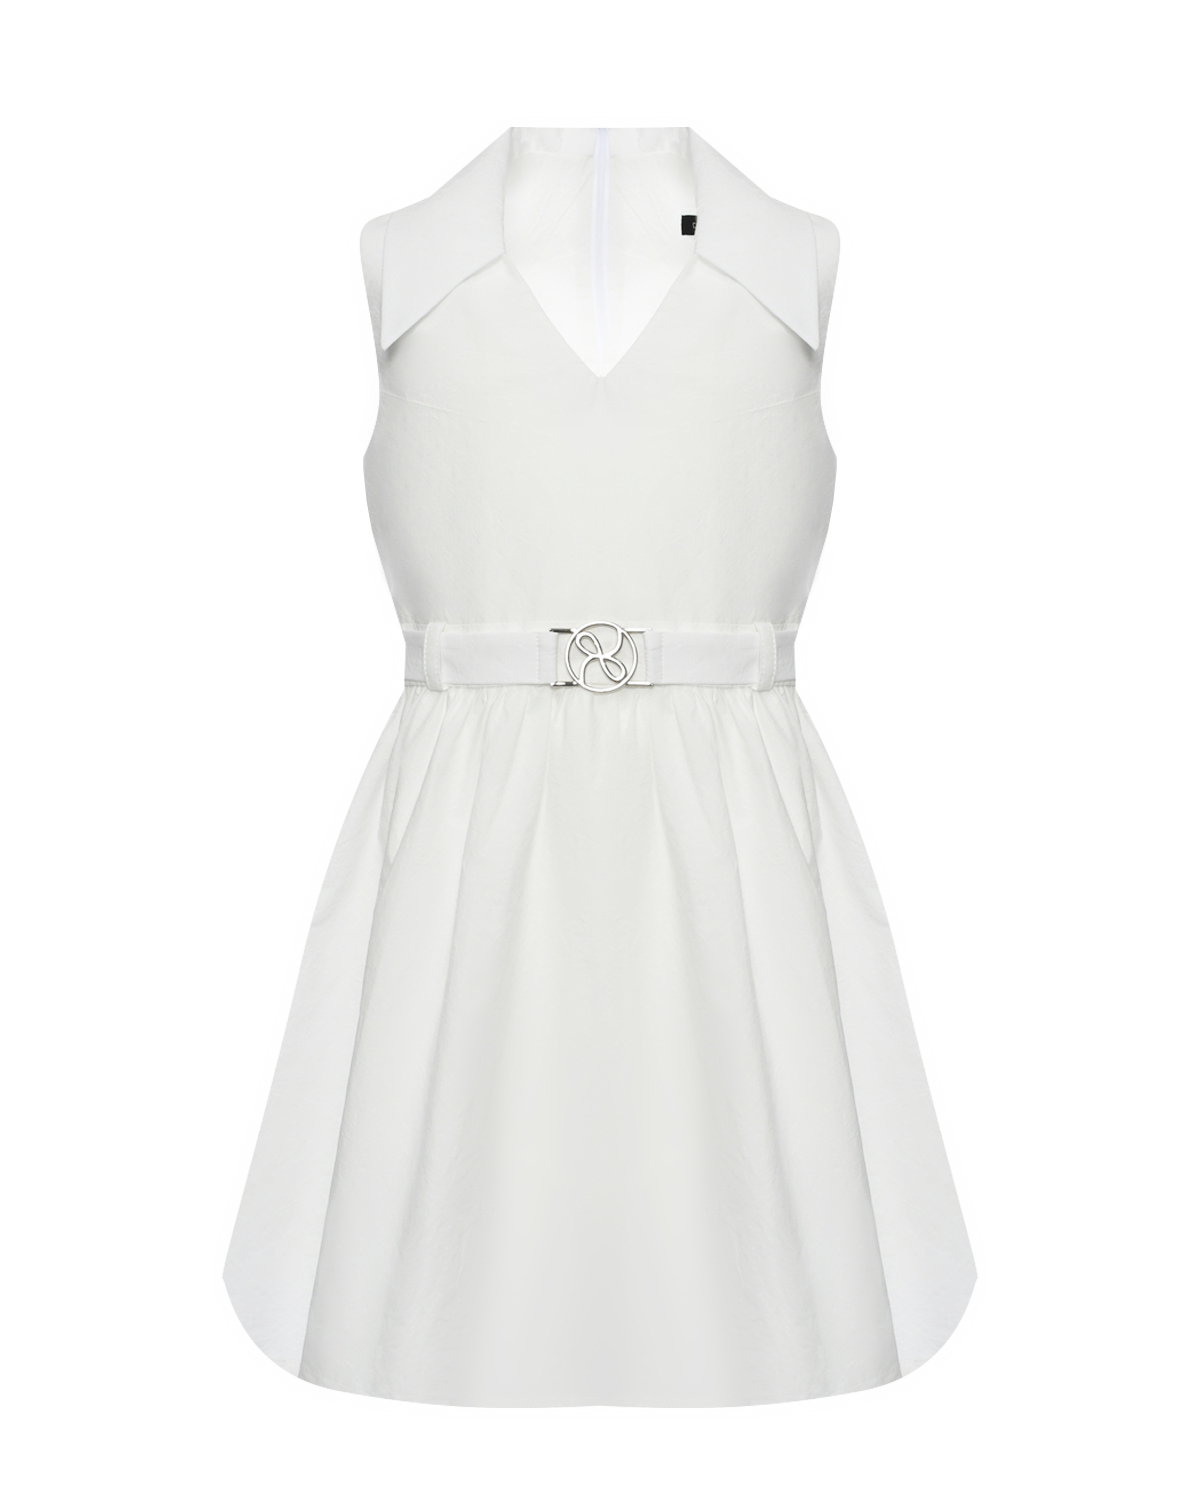 Платье с воротником и поясом, белое Dan Maralex, размер 152, цвет белый - фото 1